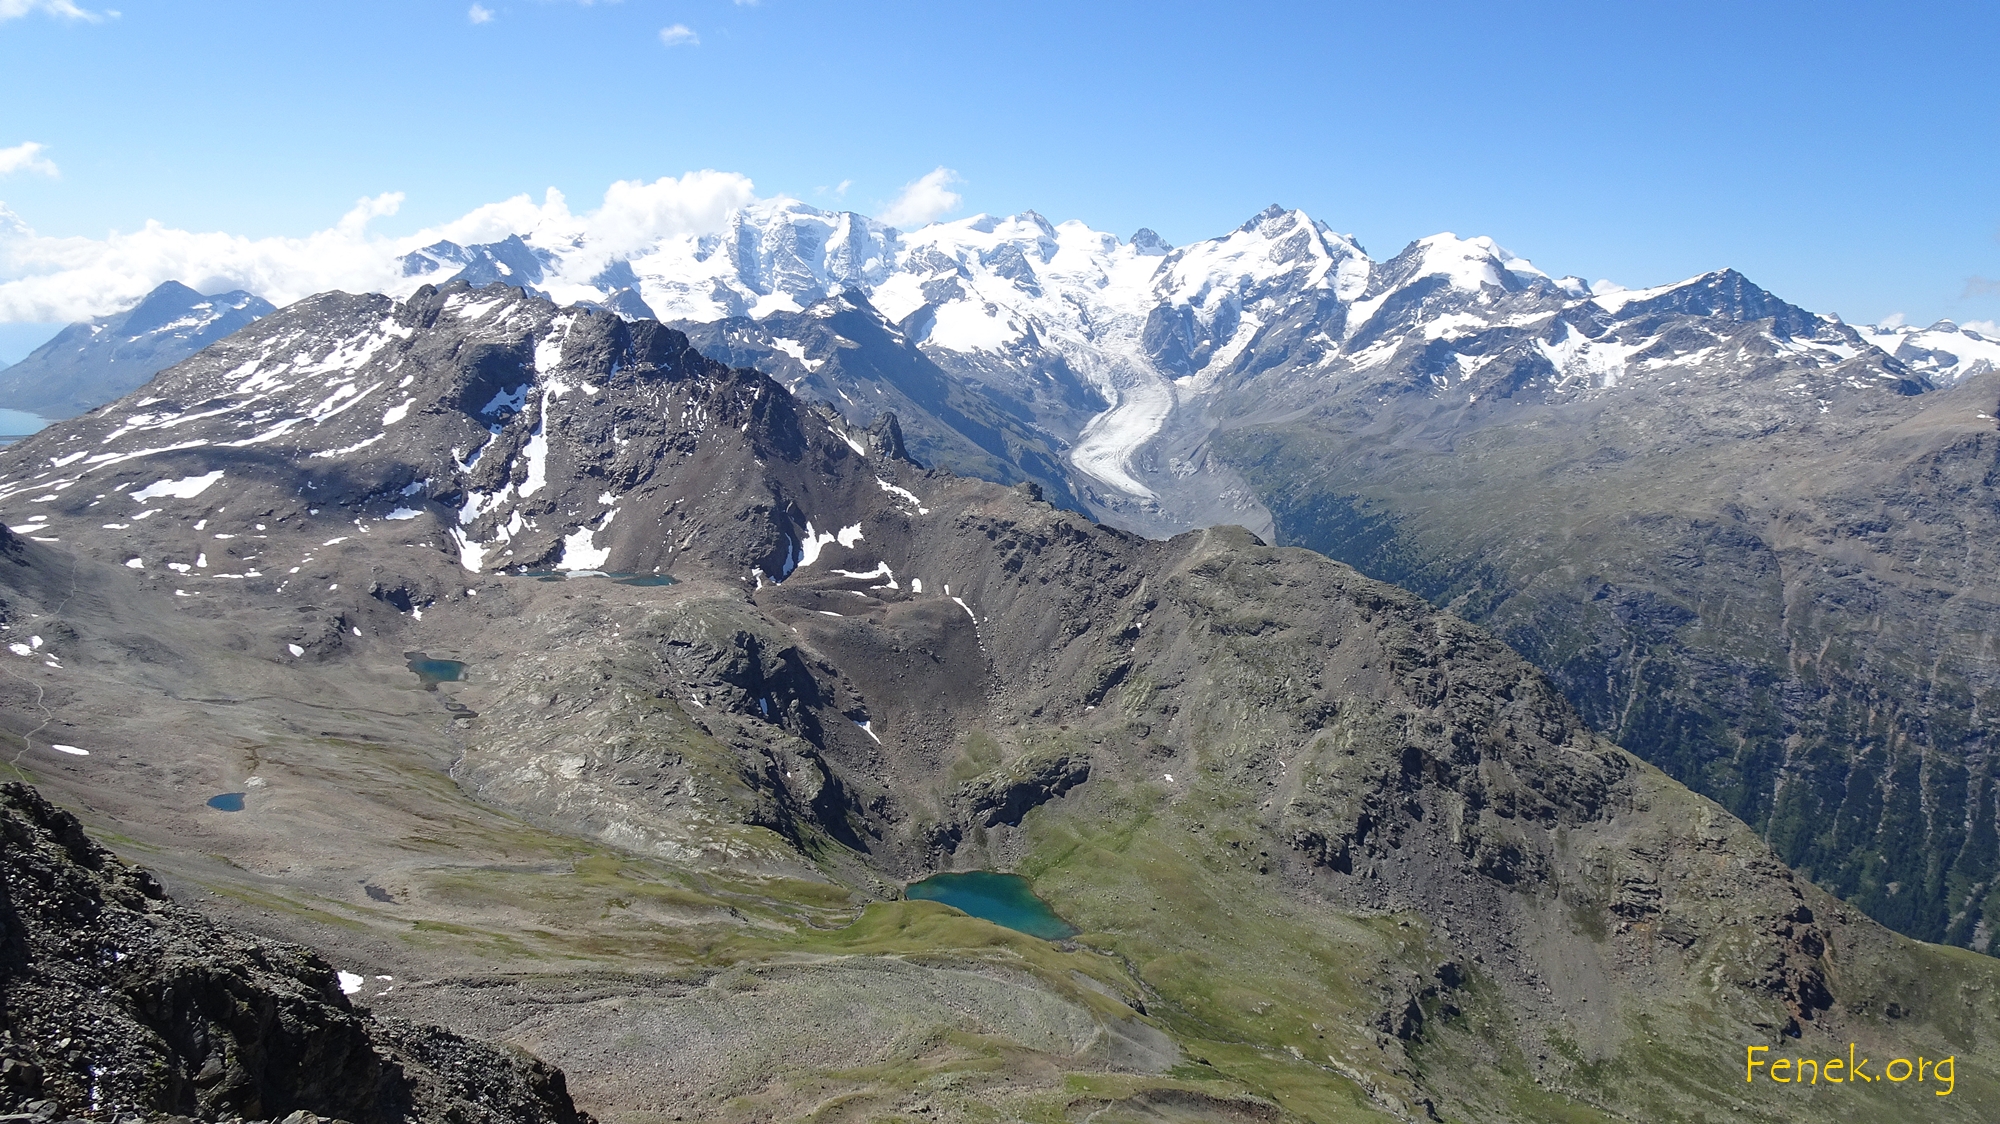 der Blick weitet sich zum Bernina Massiv